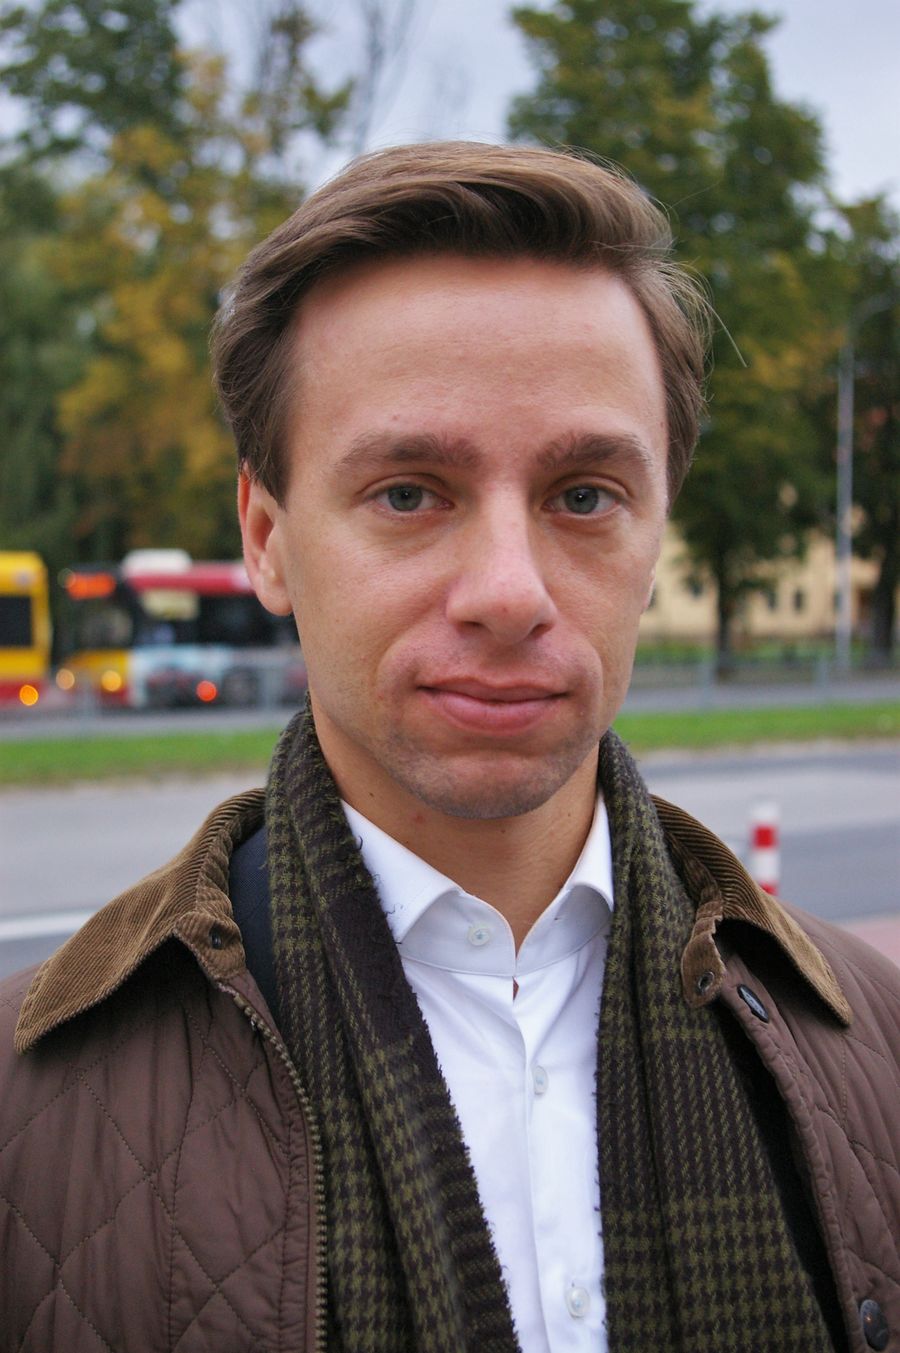 Krzysztof Bosak